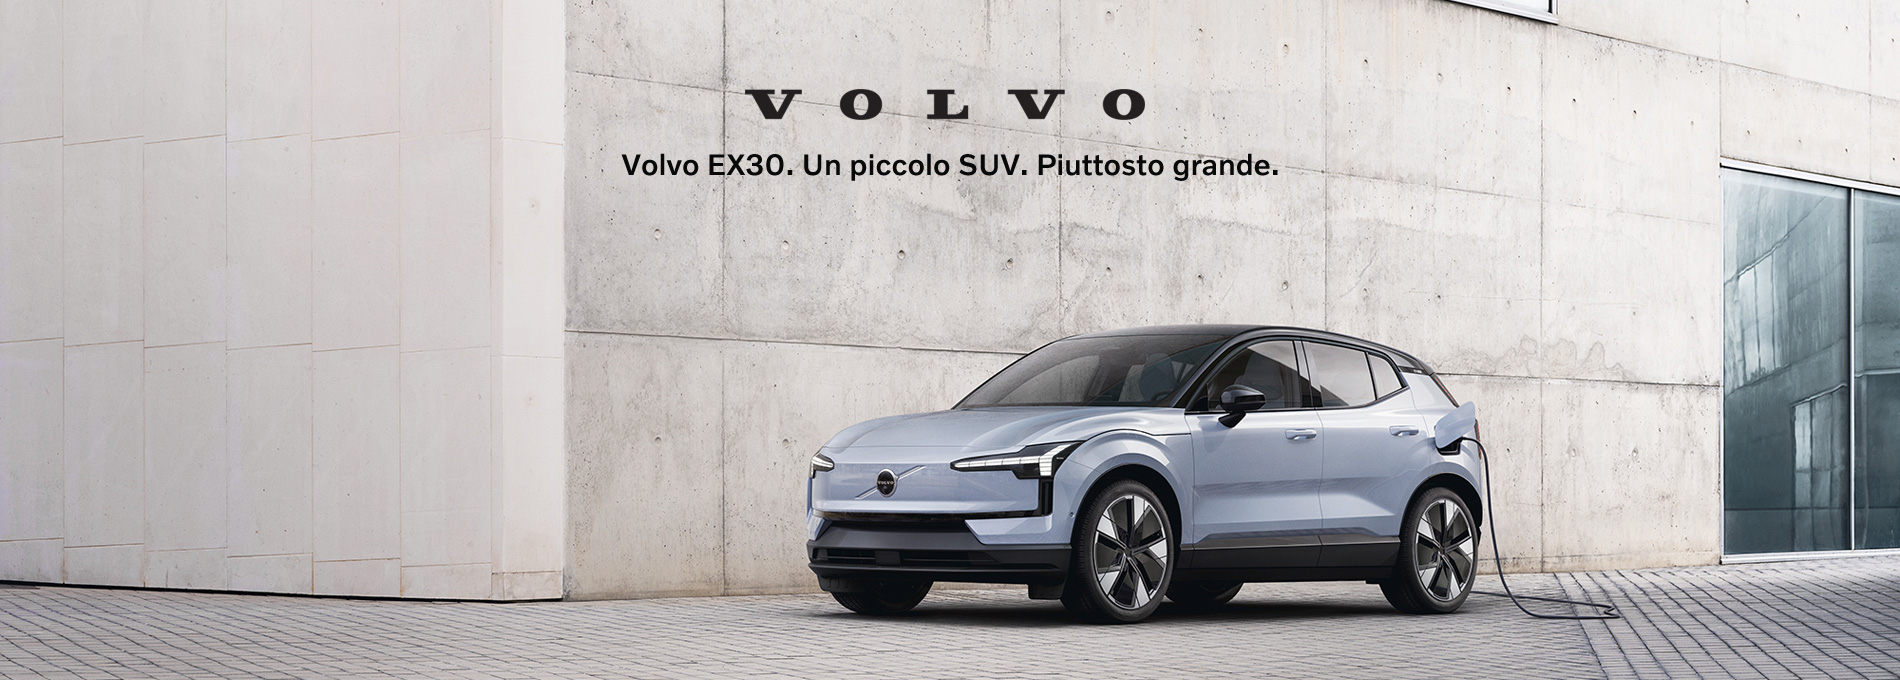 Nuova Volvo EX30